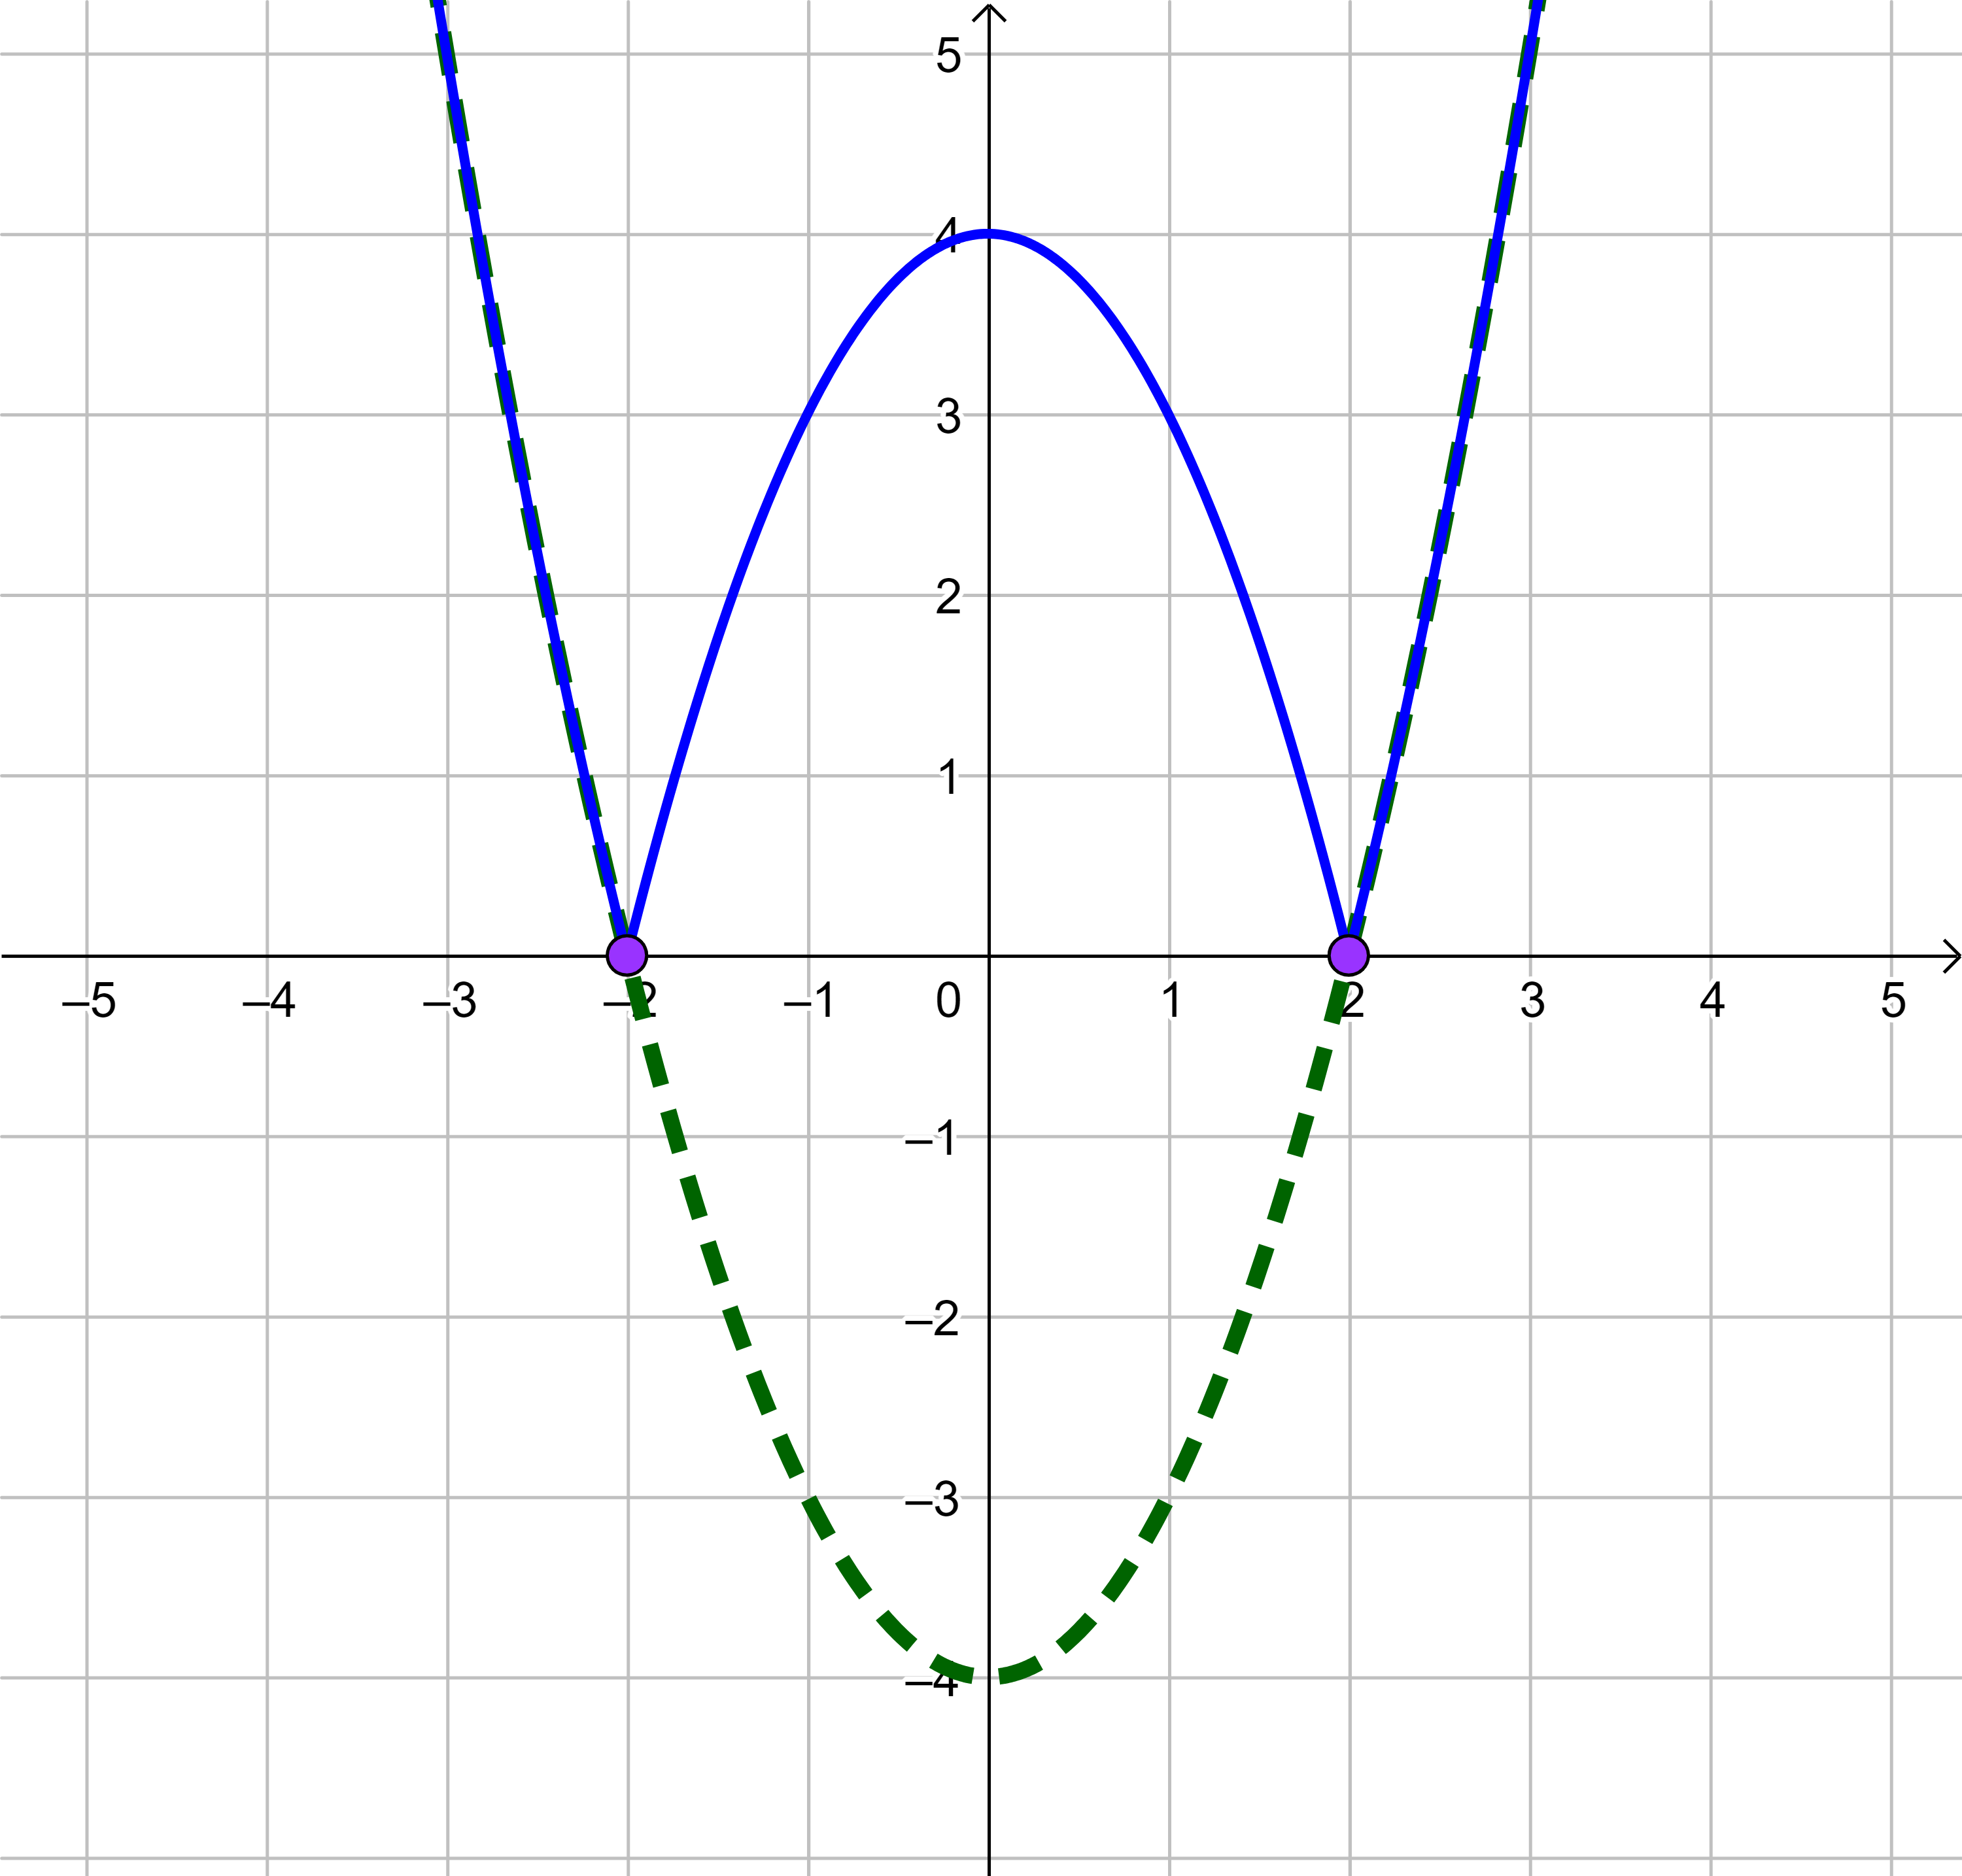 La imagen muestra el valor absoluto de una parábola